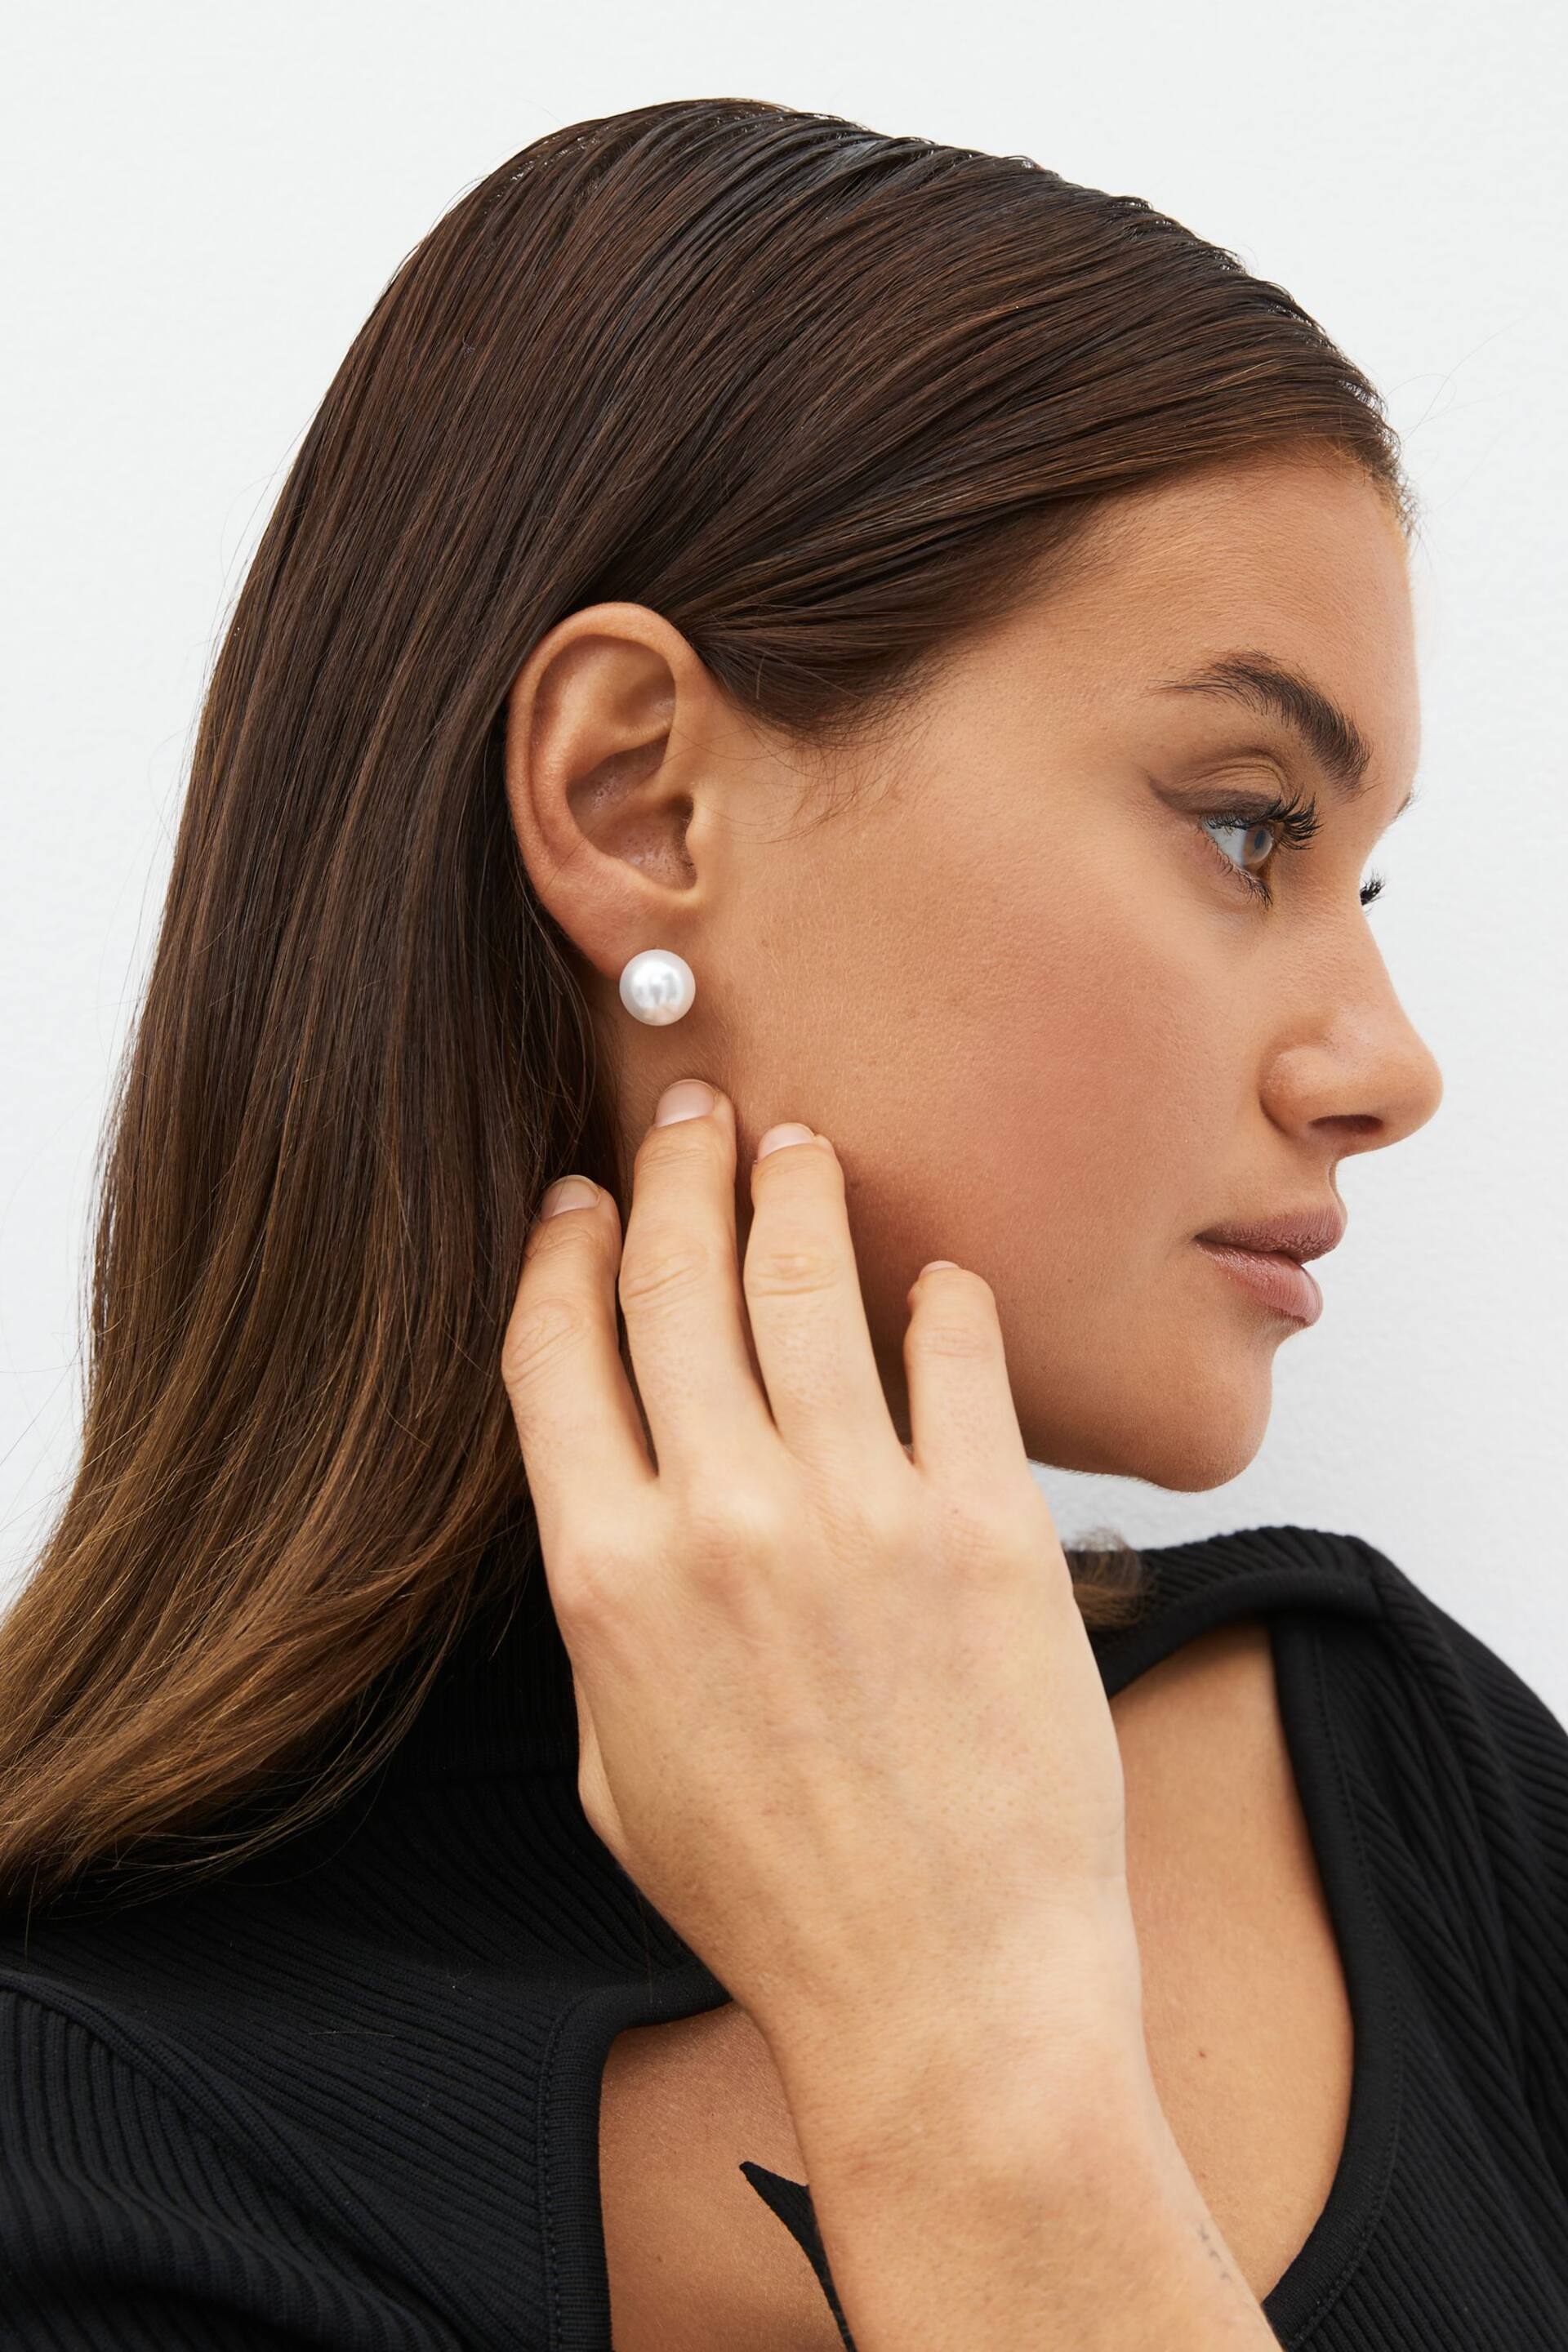 White Pearl Stud Earrings 5 Pack - Image 2 of 3